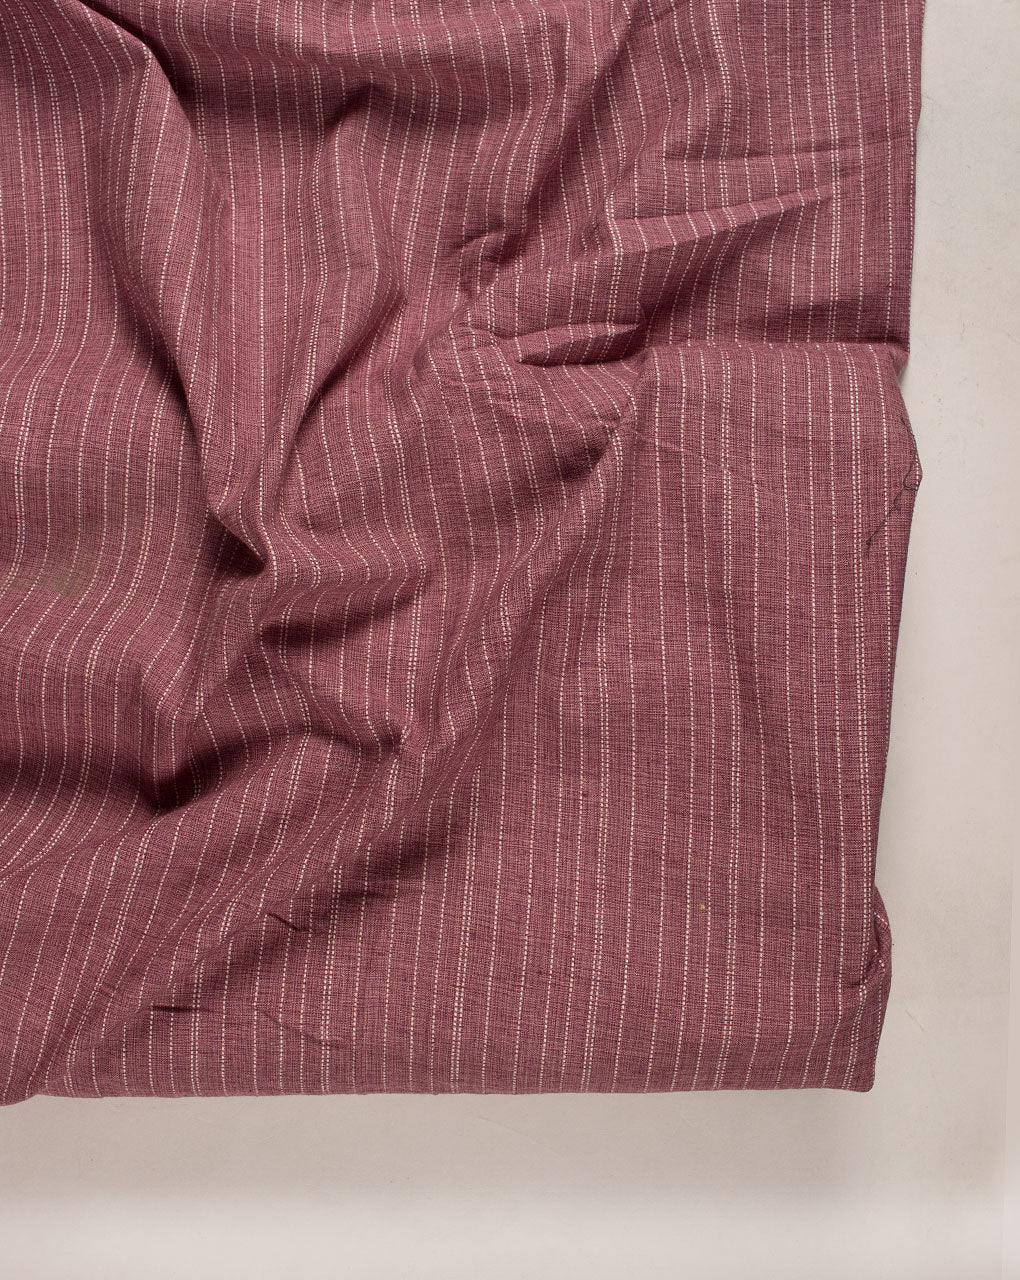 ( Pre Cut 50 CM ) Kantha Loom Textured Cotton Fabric